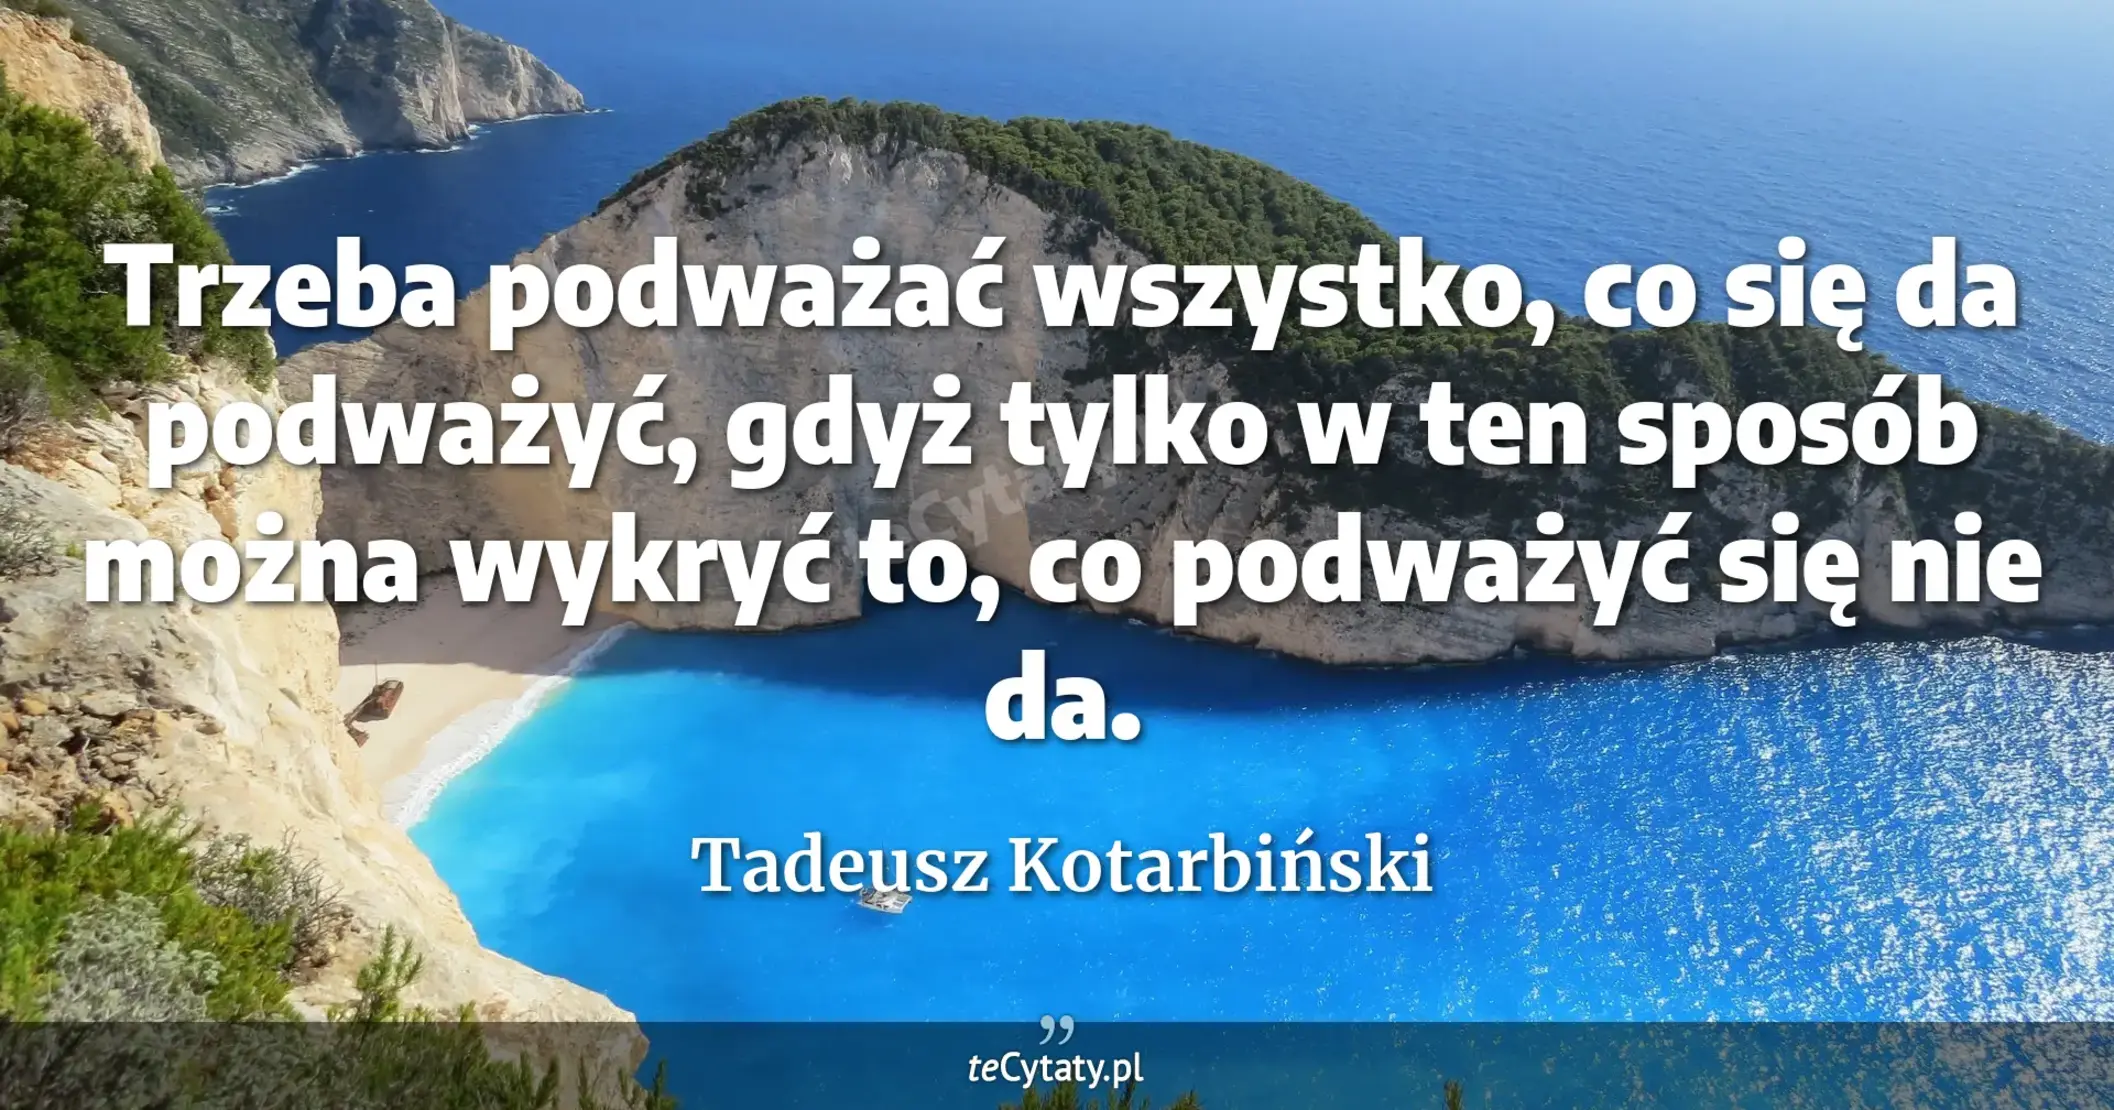 Trzeba podważać wszystko, co się da podważyć, gdyż tylko w ten sposób można wykryć to, co podważyć się nie da. - Tadeusz Kotarbiński